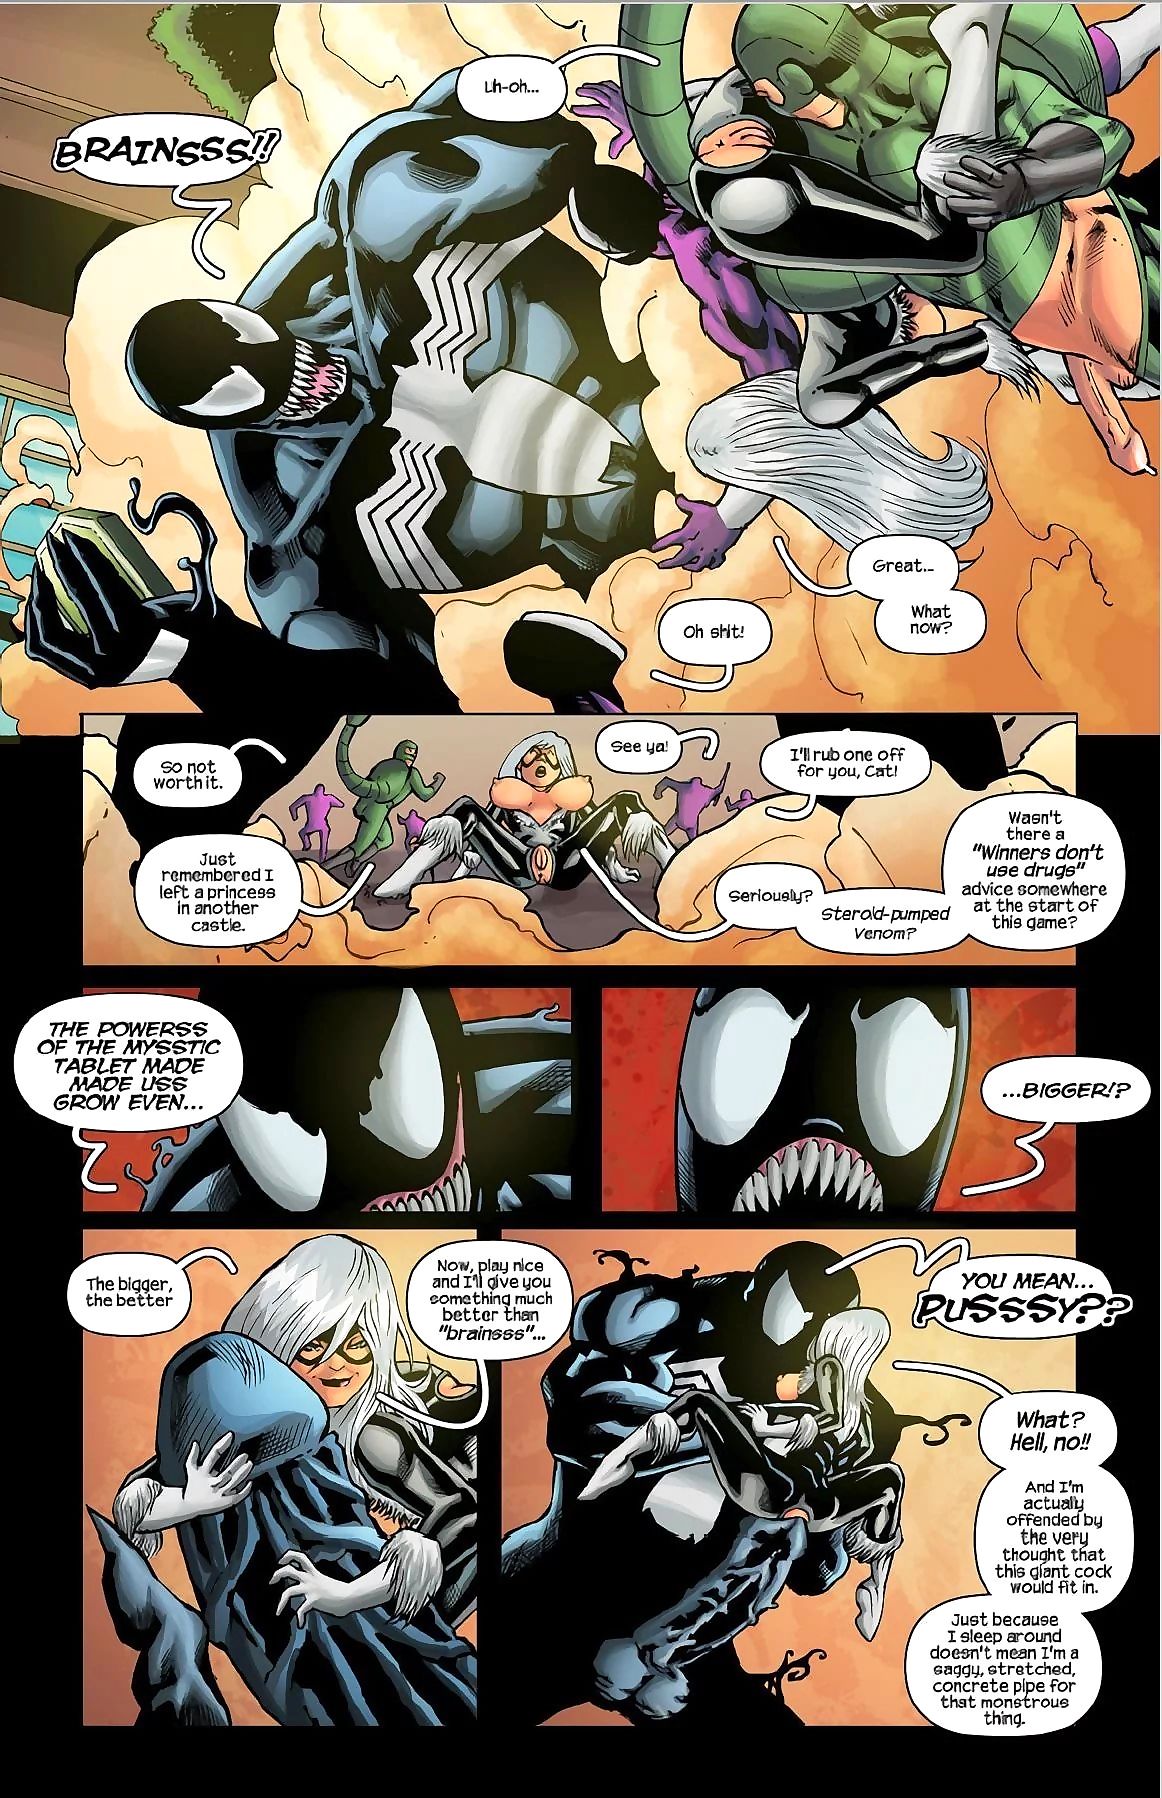 Tracy scops spiderman, 이 ’91 아케이드 게임 page 1